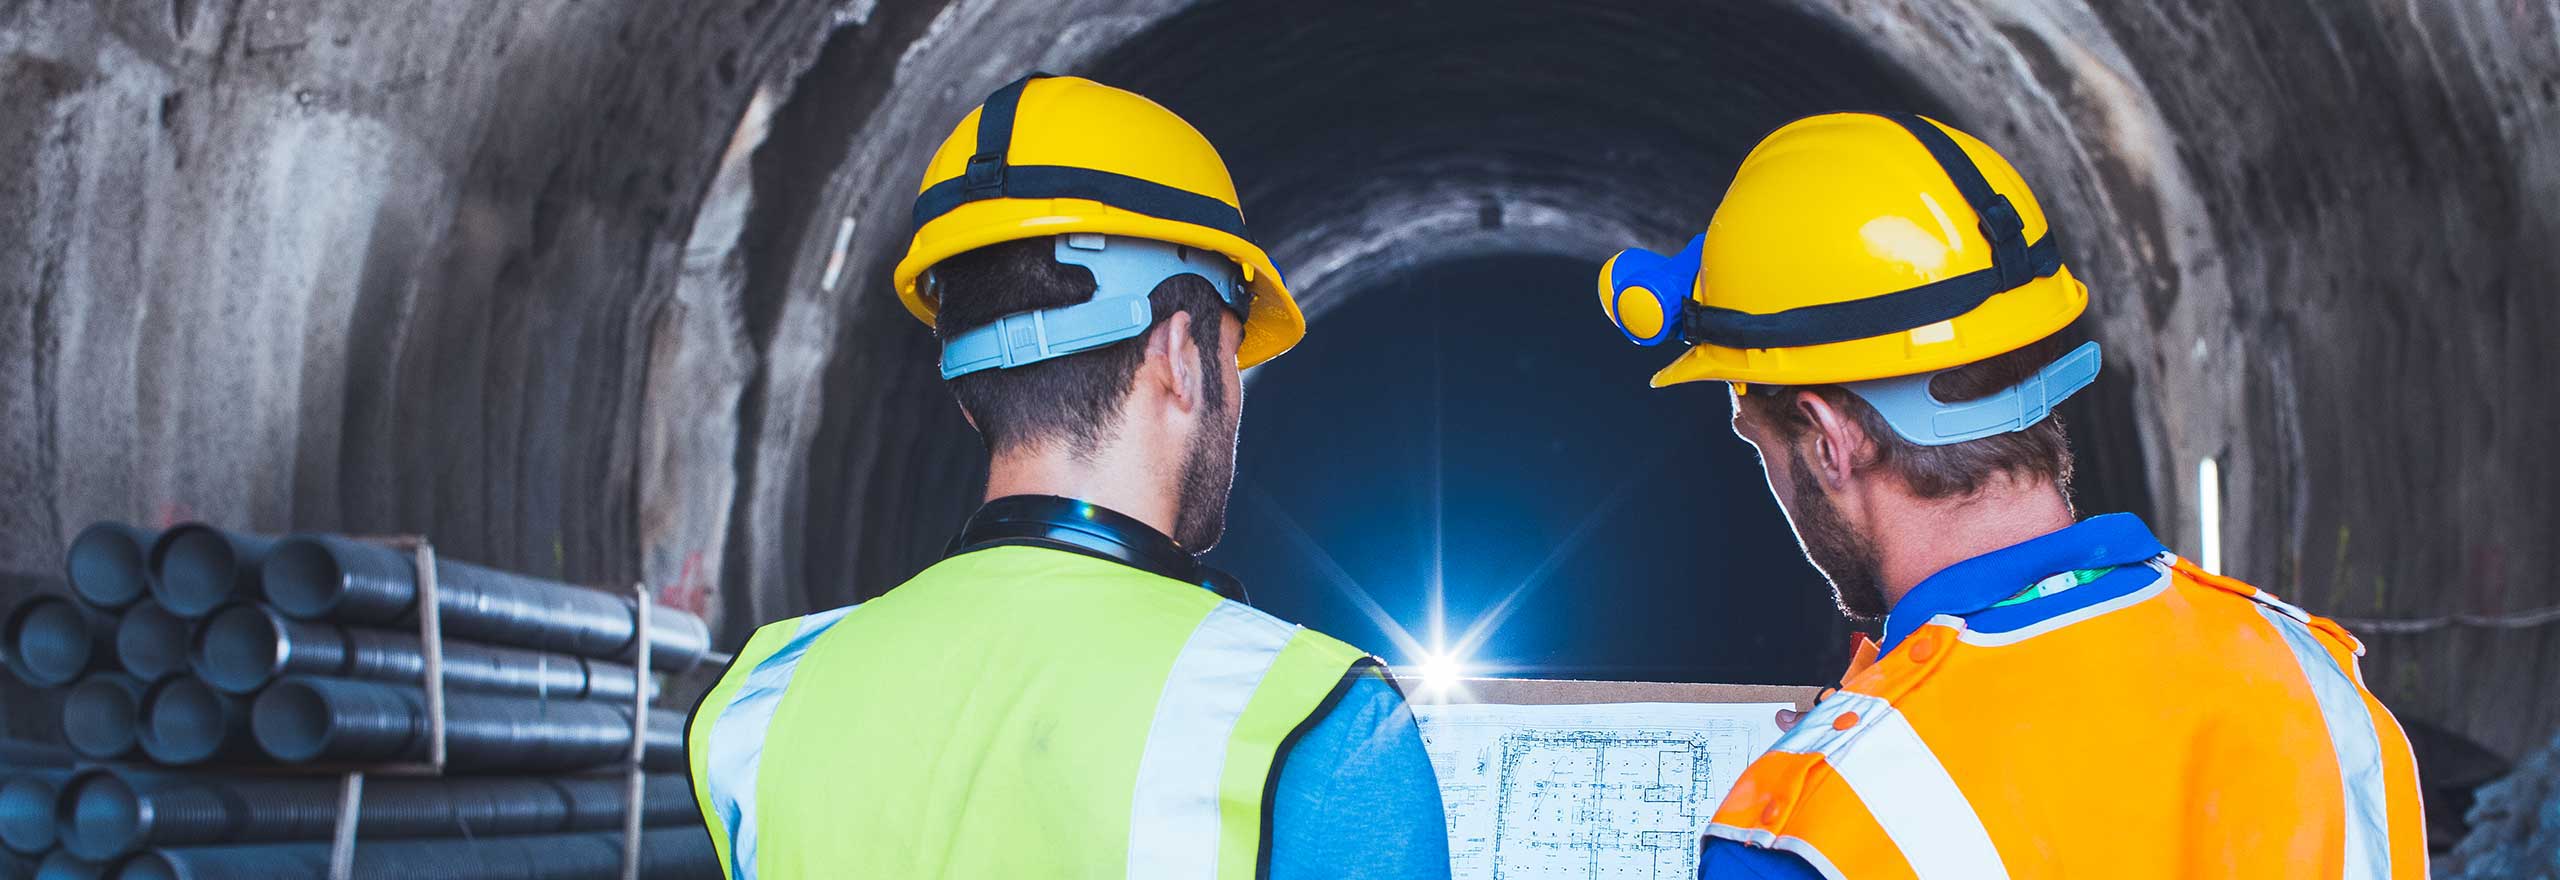 Travailleurs examinant des dessins CAO numérisés dans un tunnel